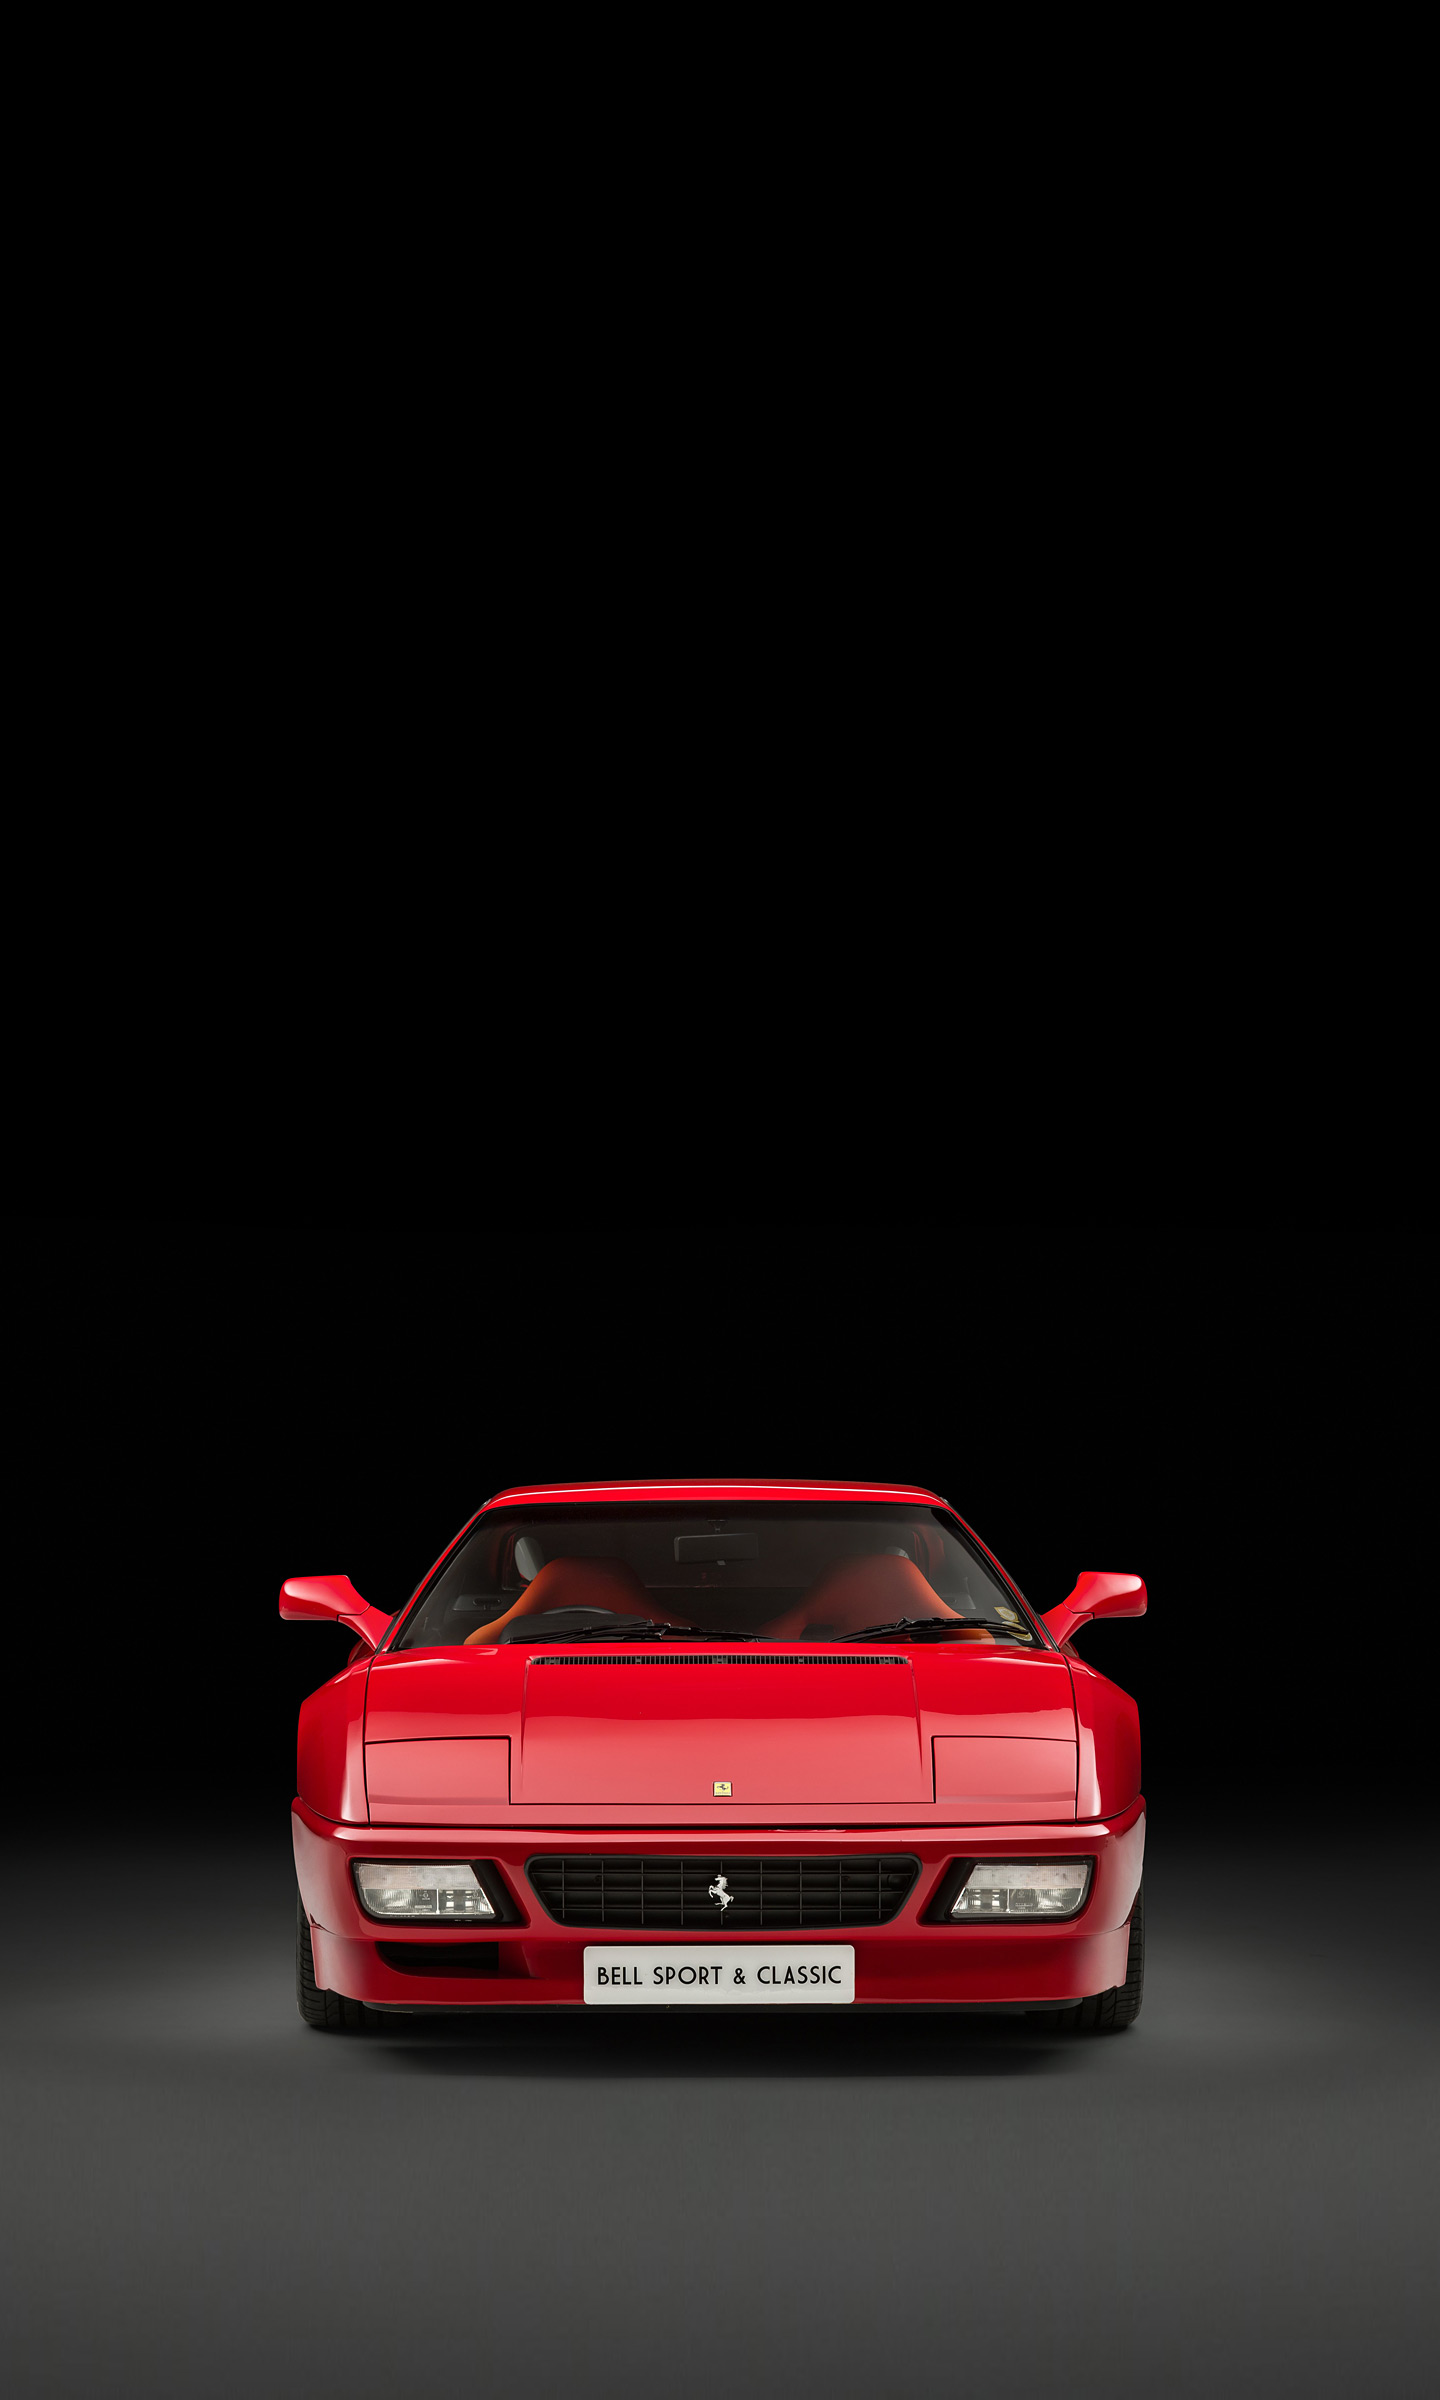  1994 Ferrari 348 GT Competizione Wallpaper.